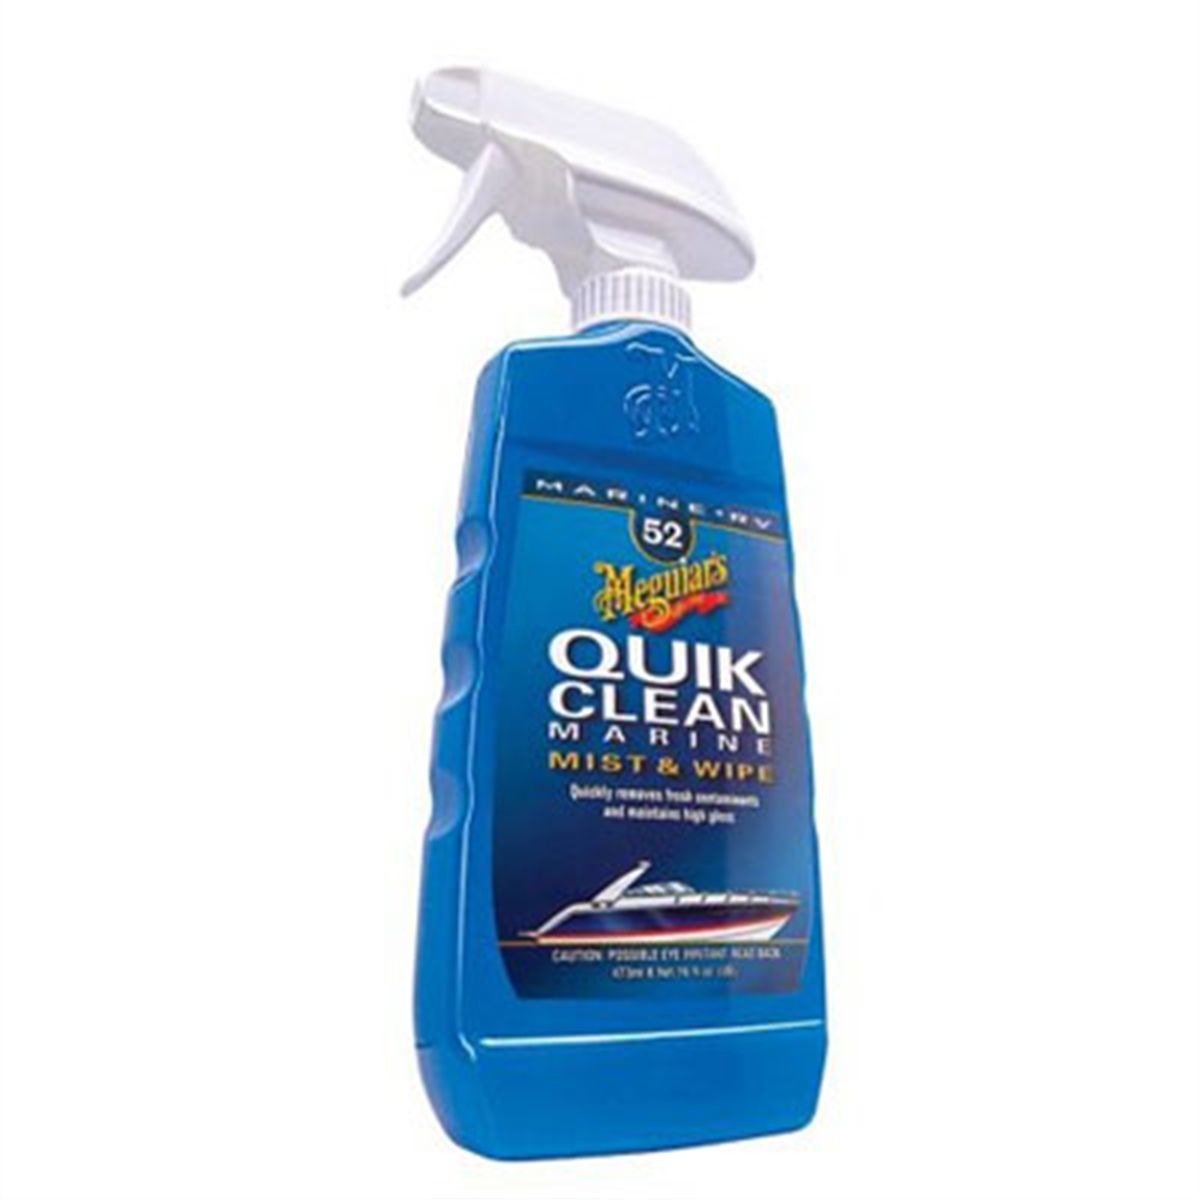 Quik Clean Marine